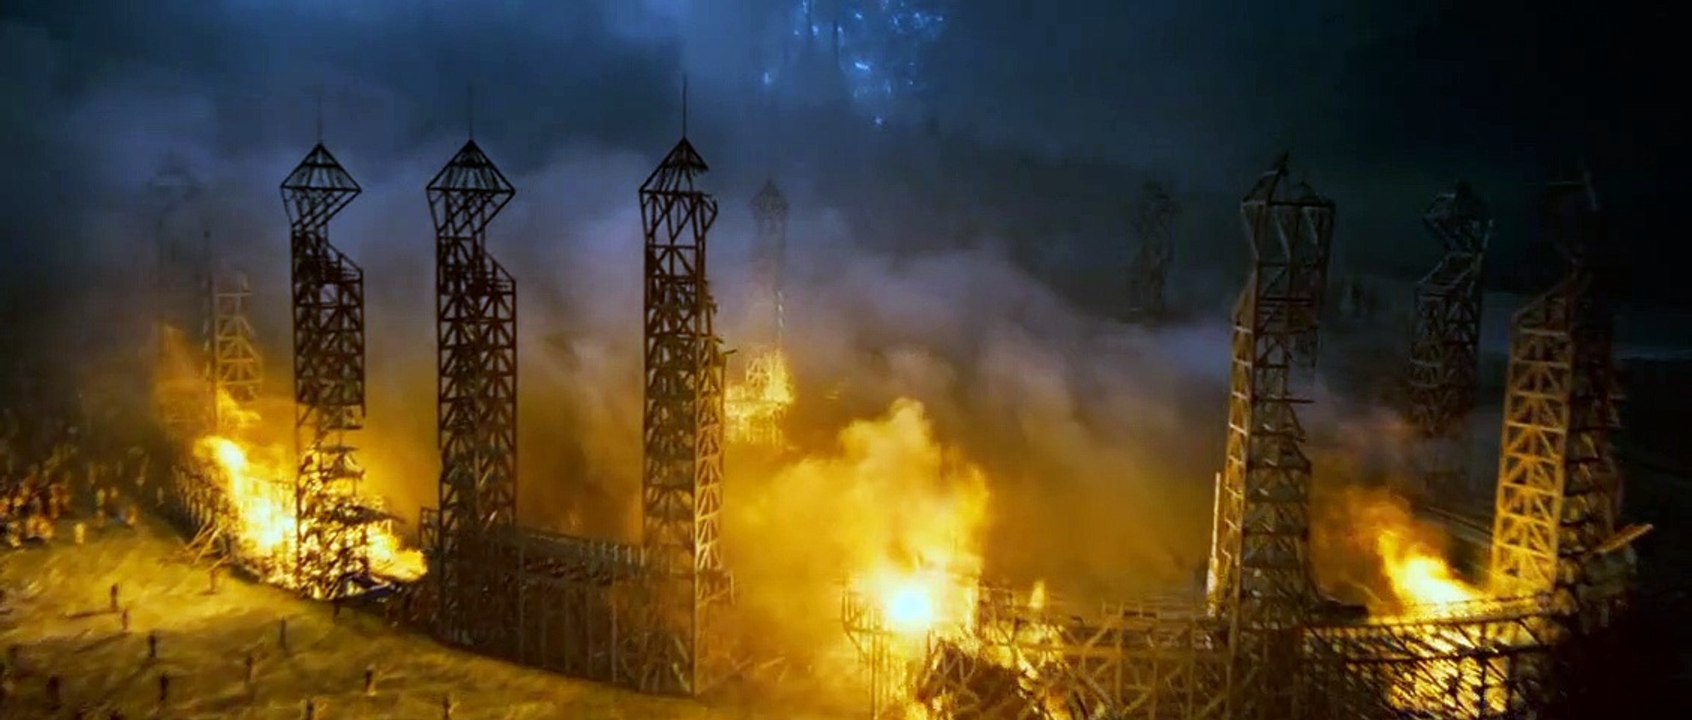 Harry Potter und die Heiligtümer des Todes - Teil 2 Trailer (2) DF